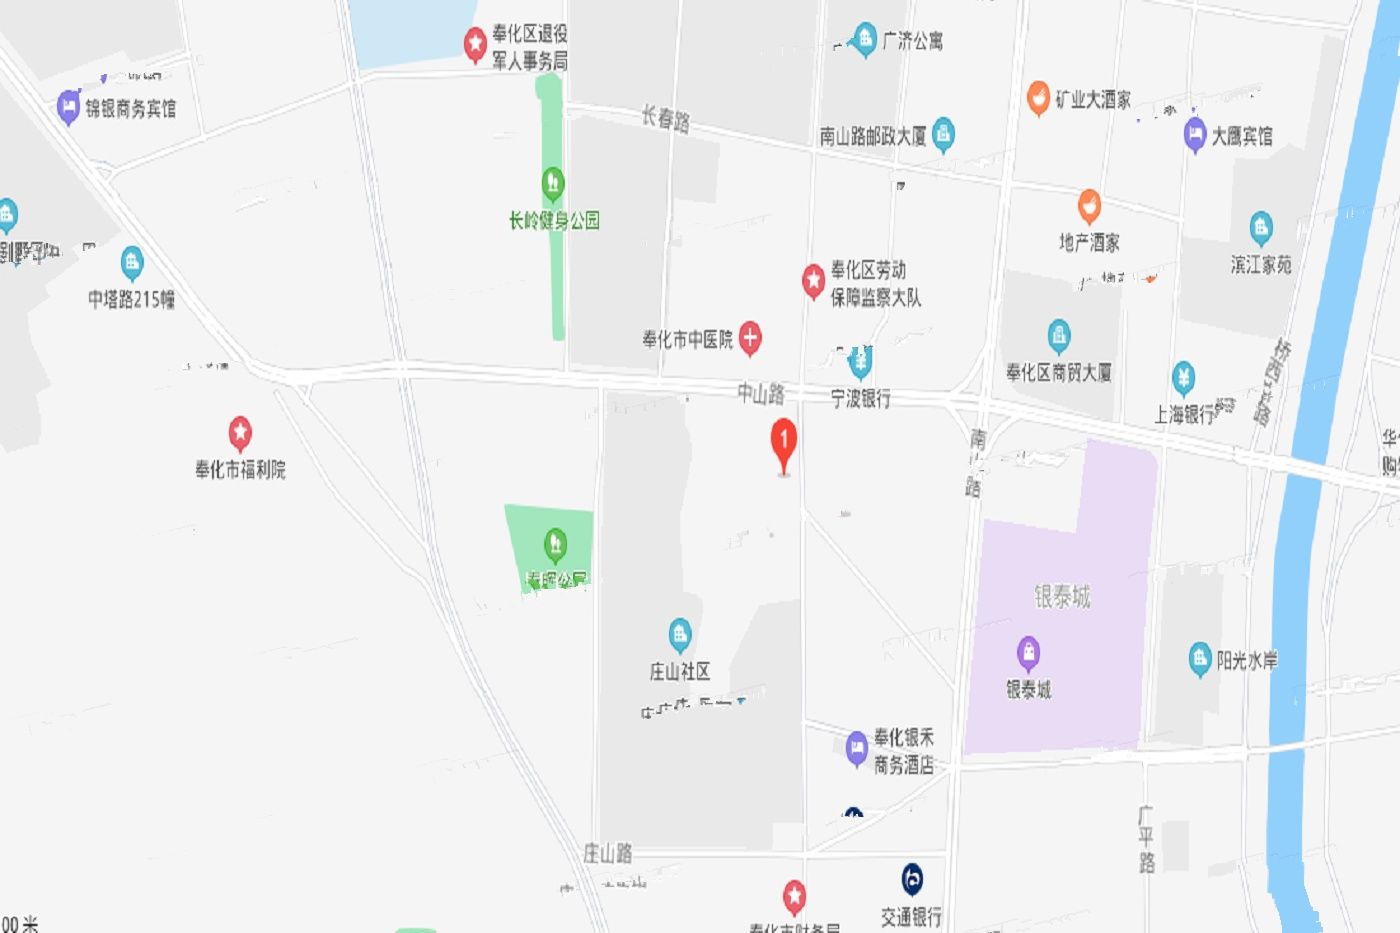 宁波市奉化区塔水(FH17-03-05a-1)地块